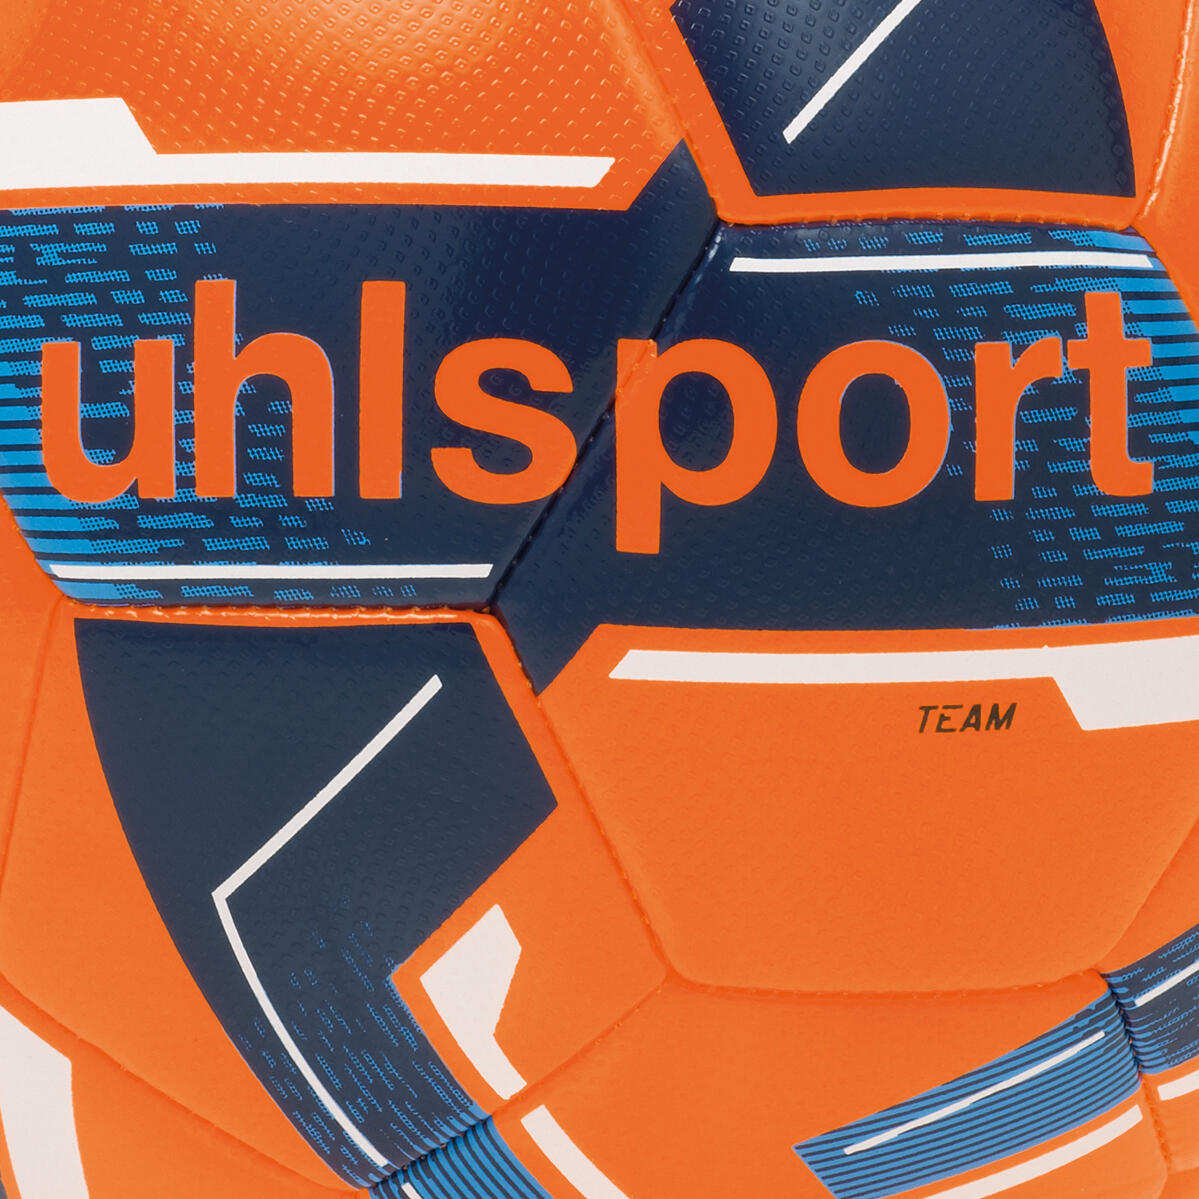 Uhlsport Team Training Football Size 5 - Orange 2/3